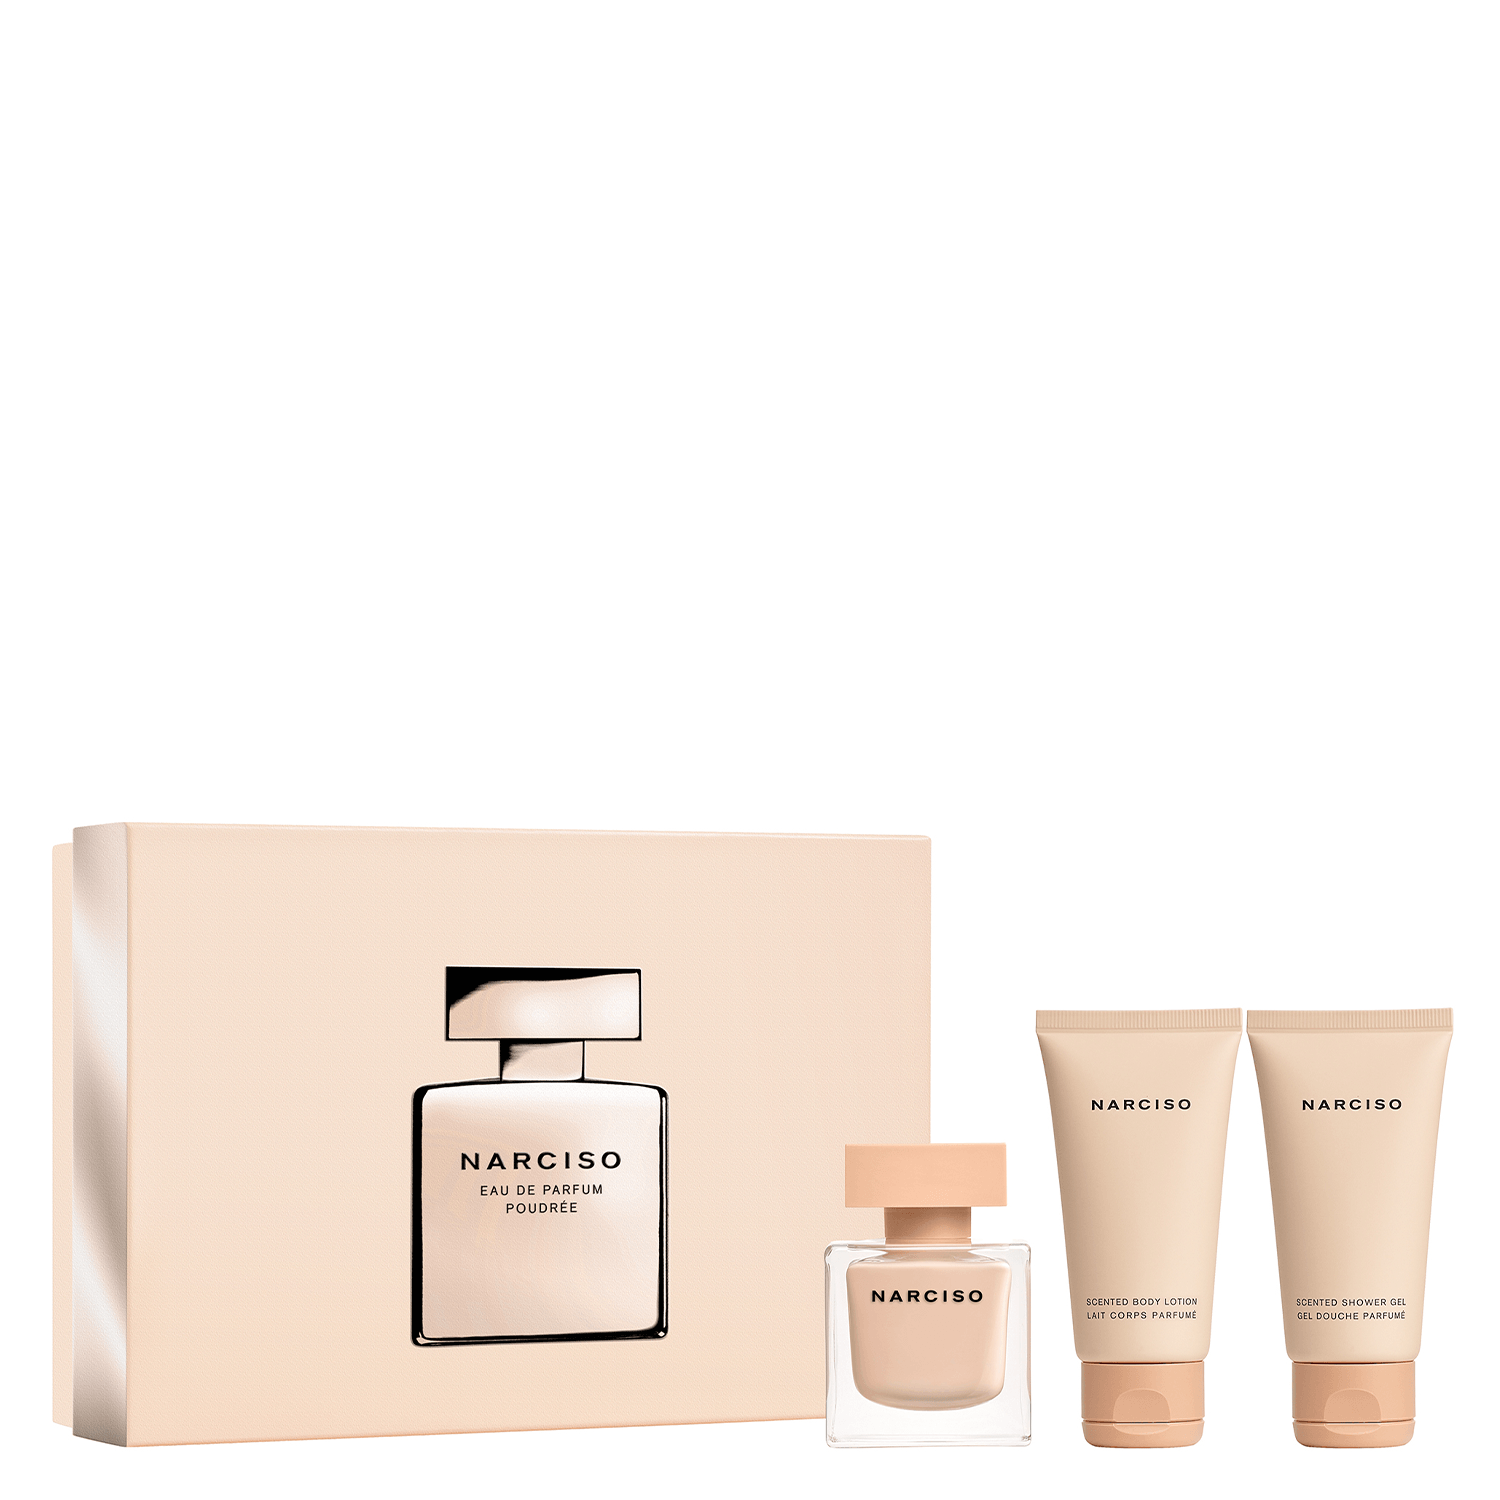 Product image from Narciso – Eau de Parfum Poudrée Set